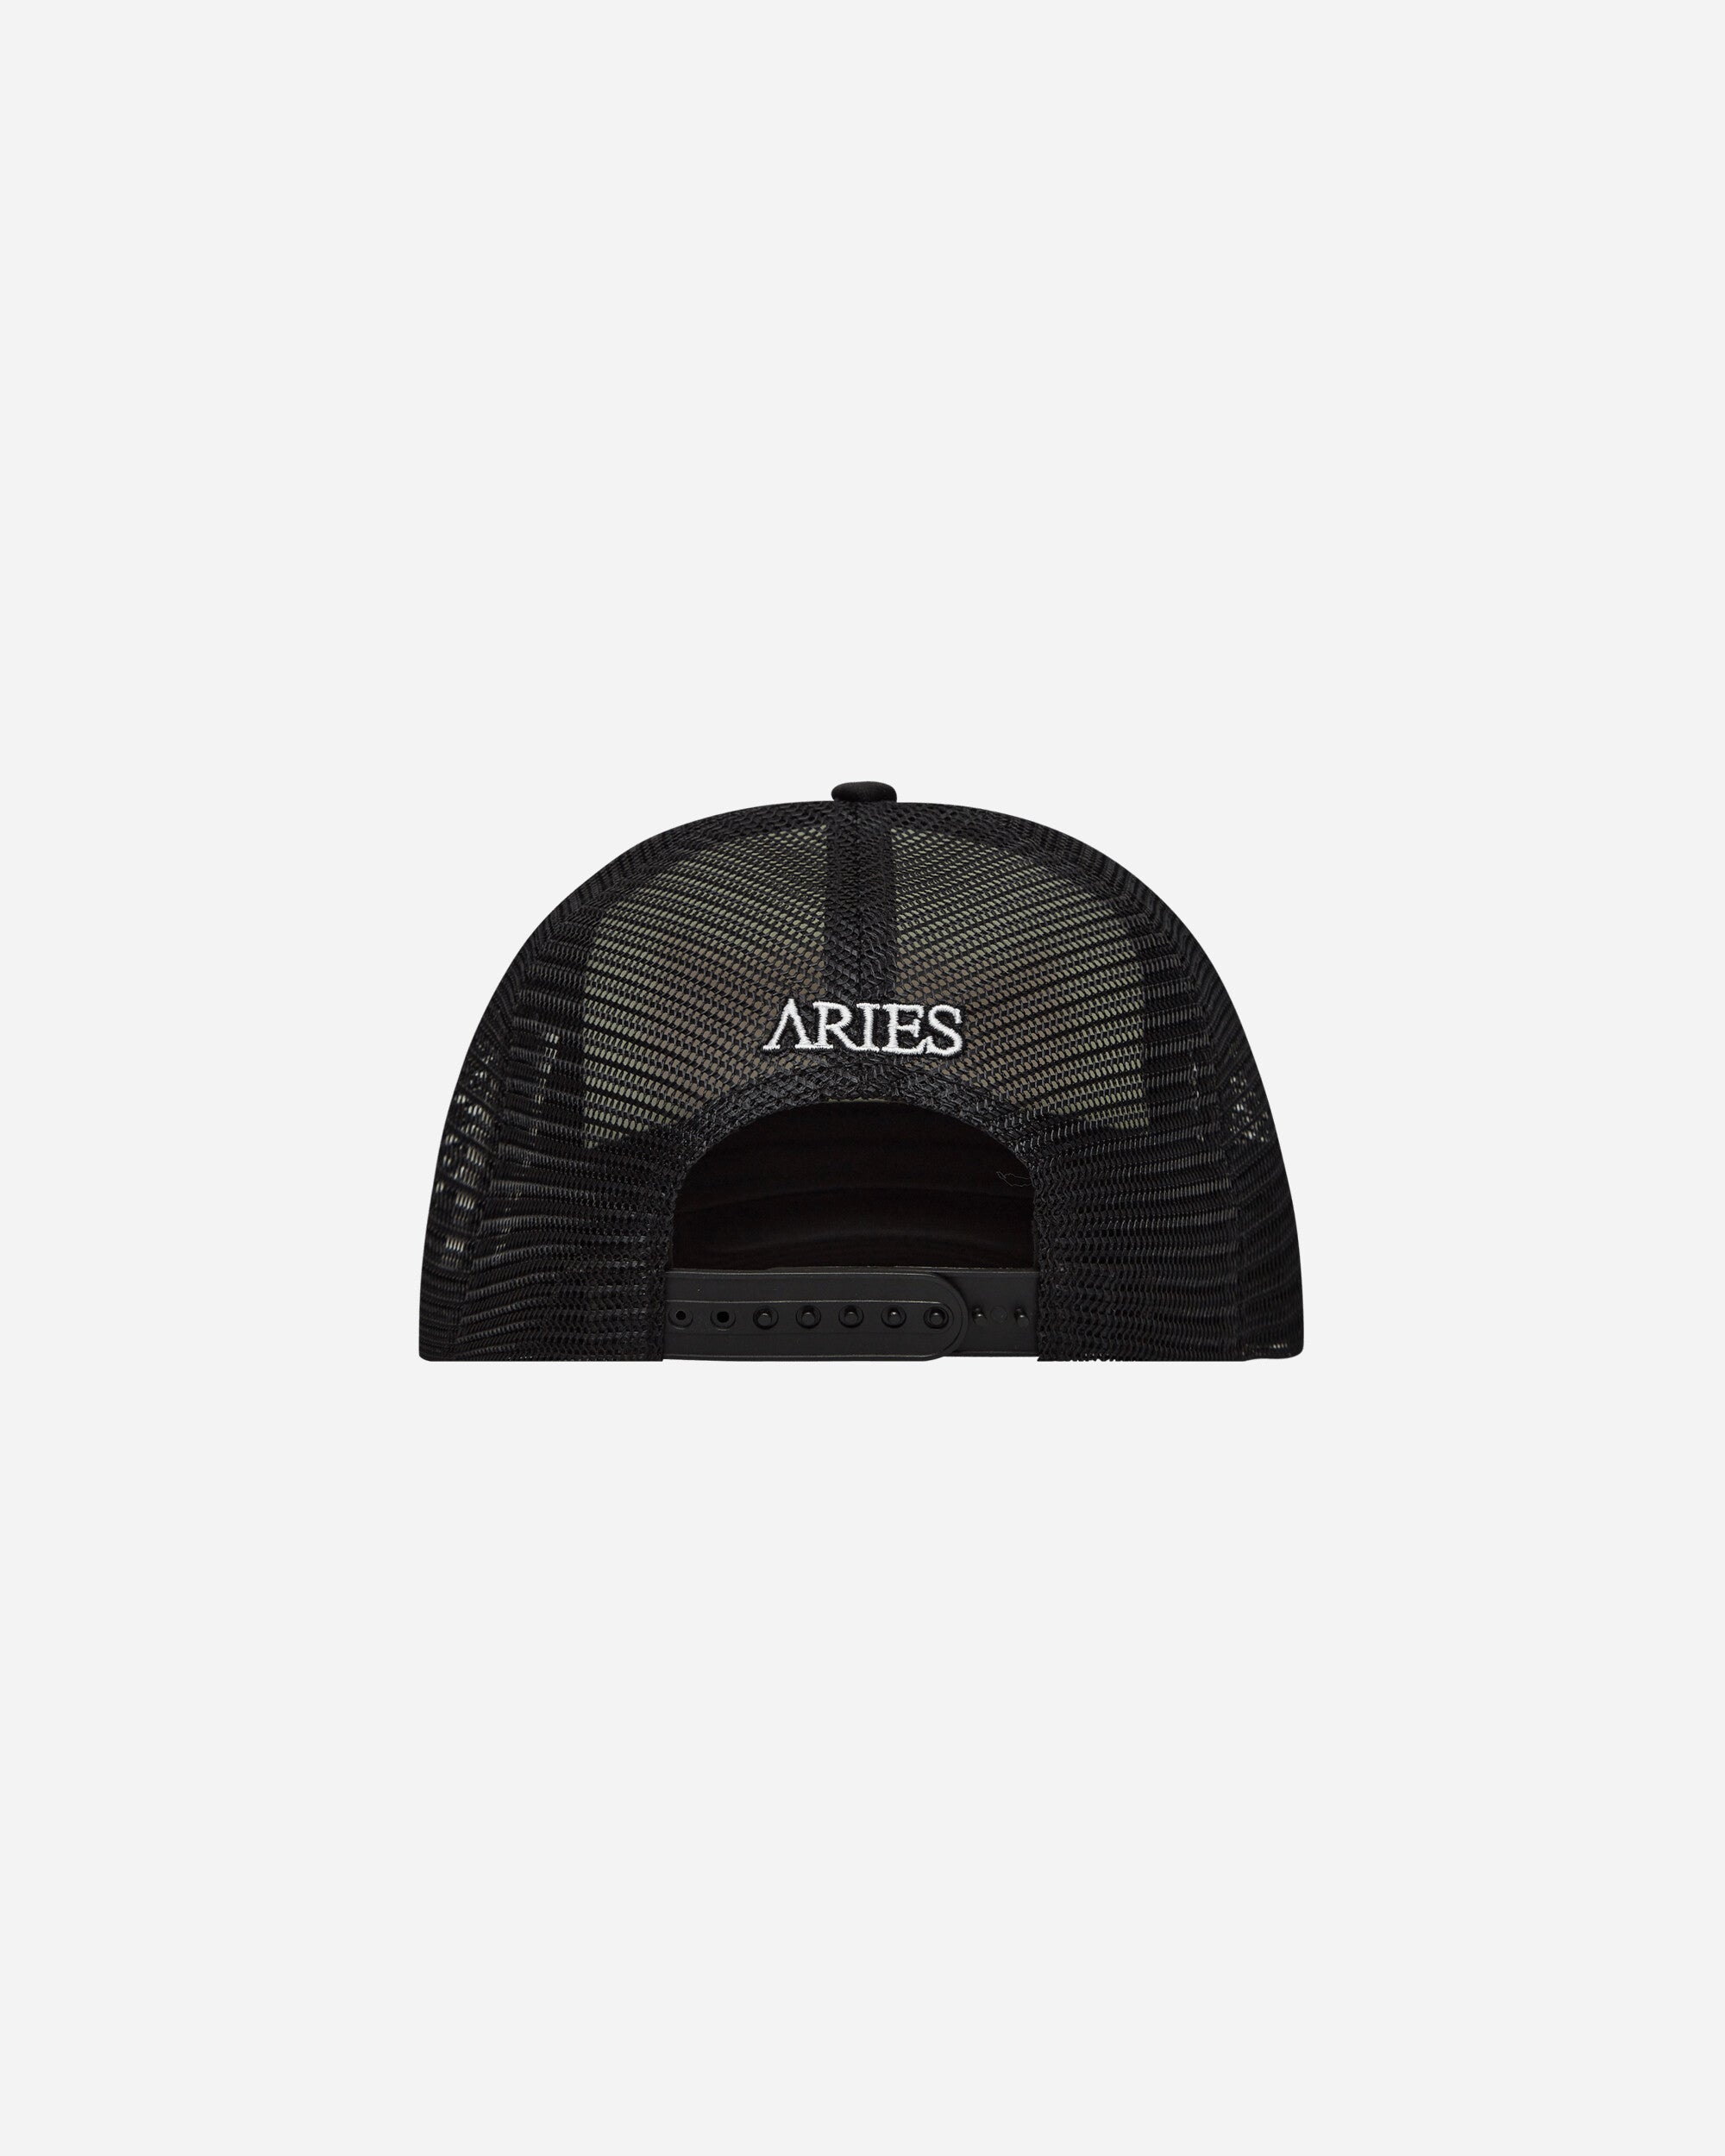 Aries Metal Trucker Cap Black Hats Caps SUAR90011 BLK